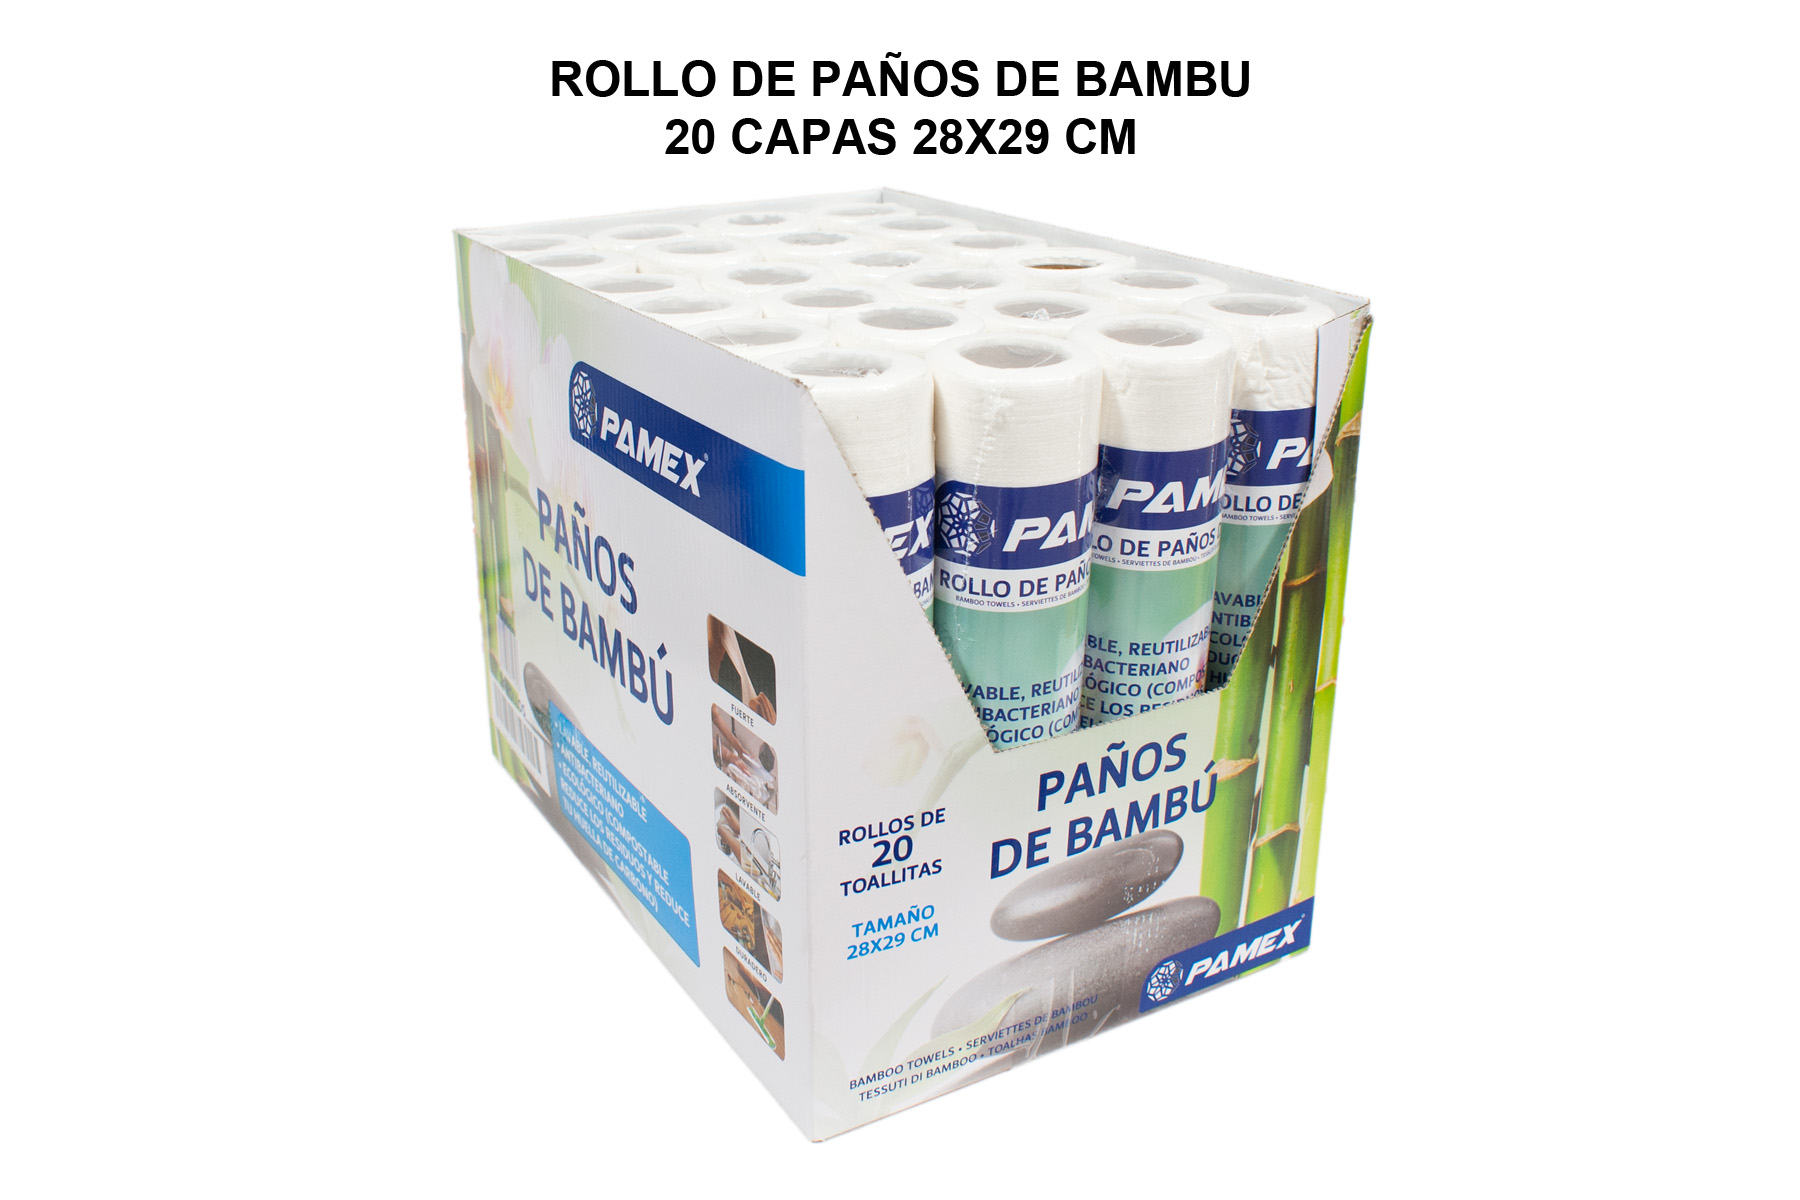 ROLLO DE PAÑOS DE BAMBU 20 CAPAS 28X29 CM